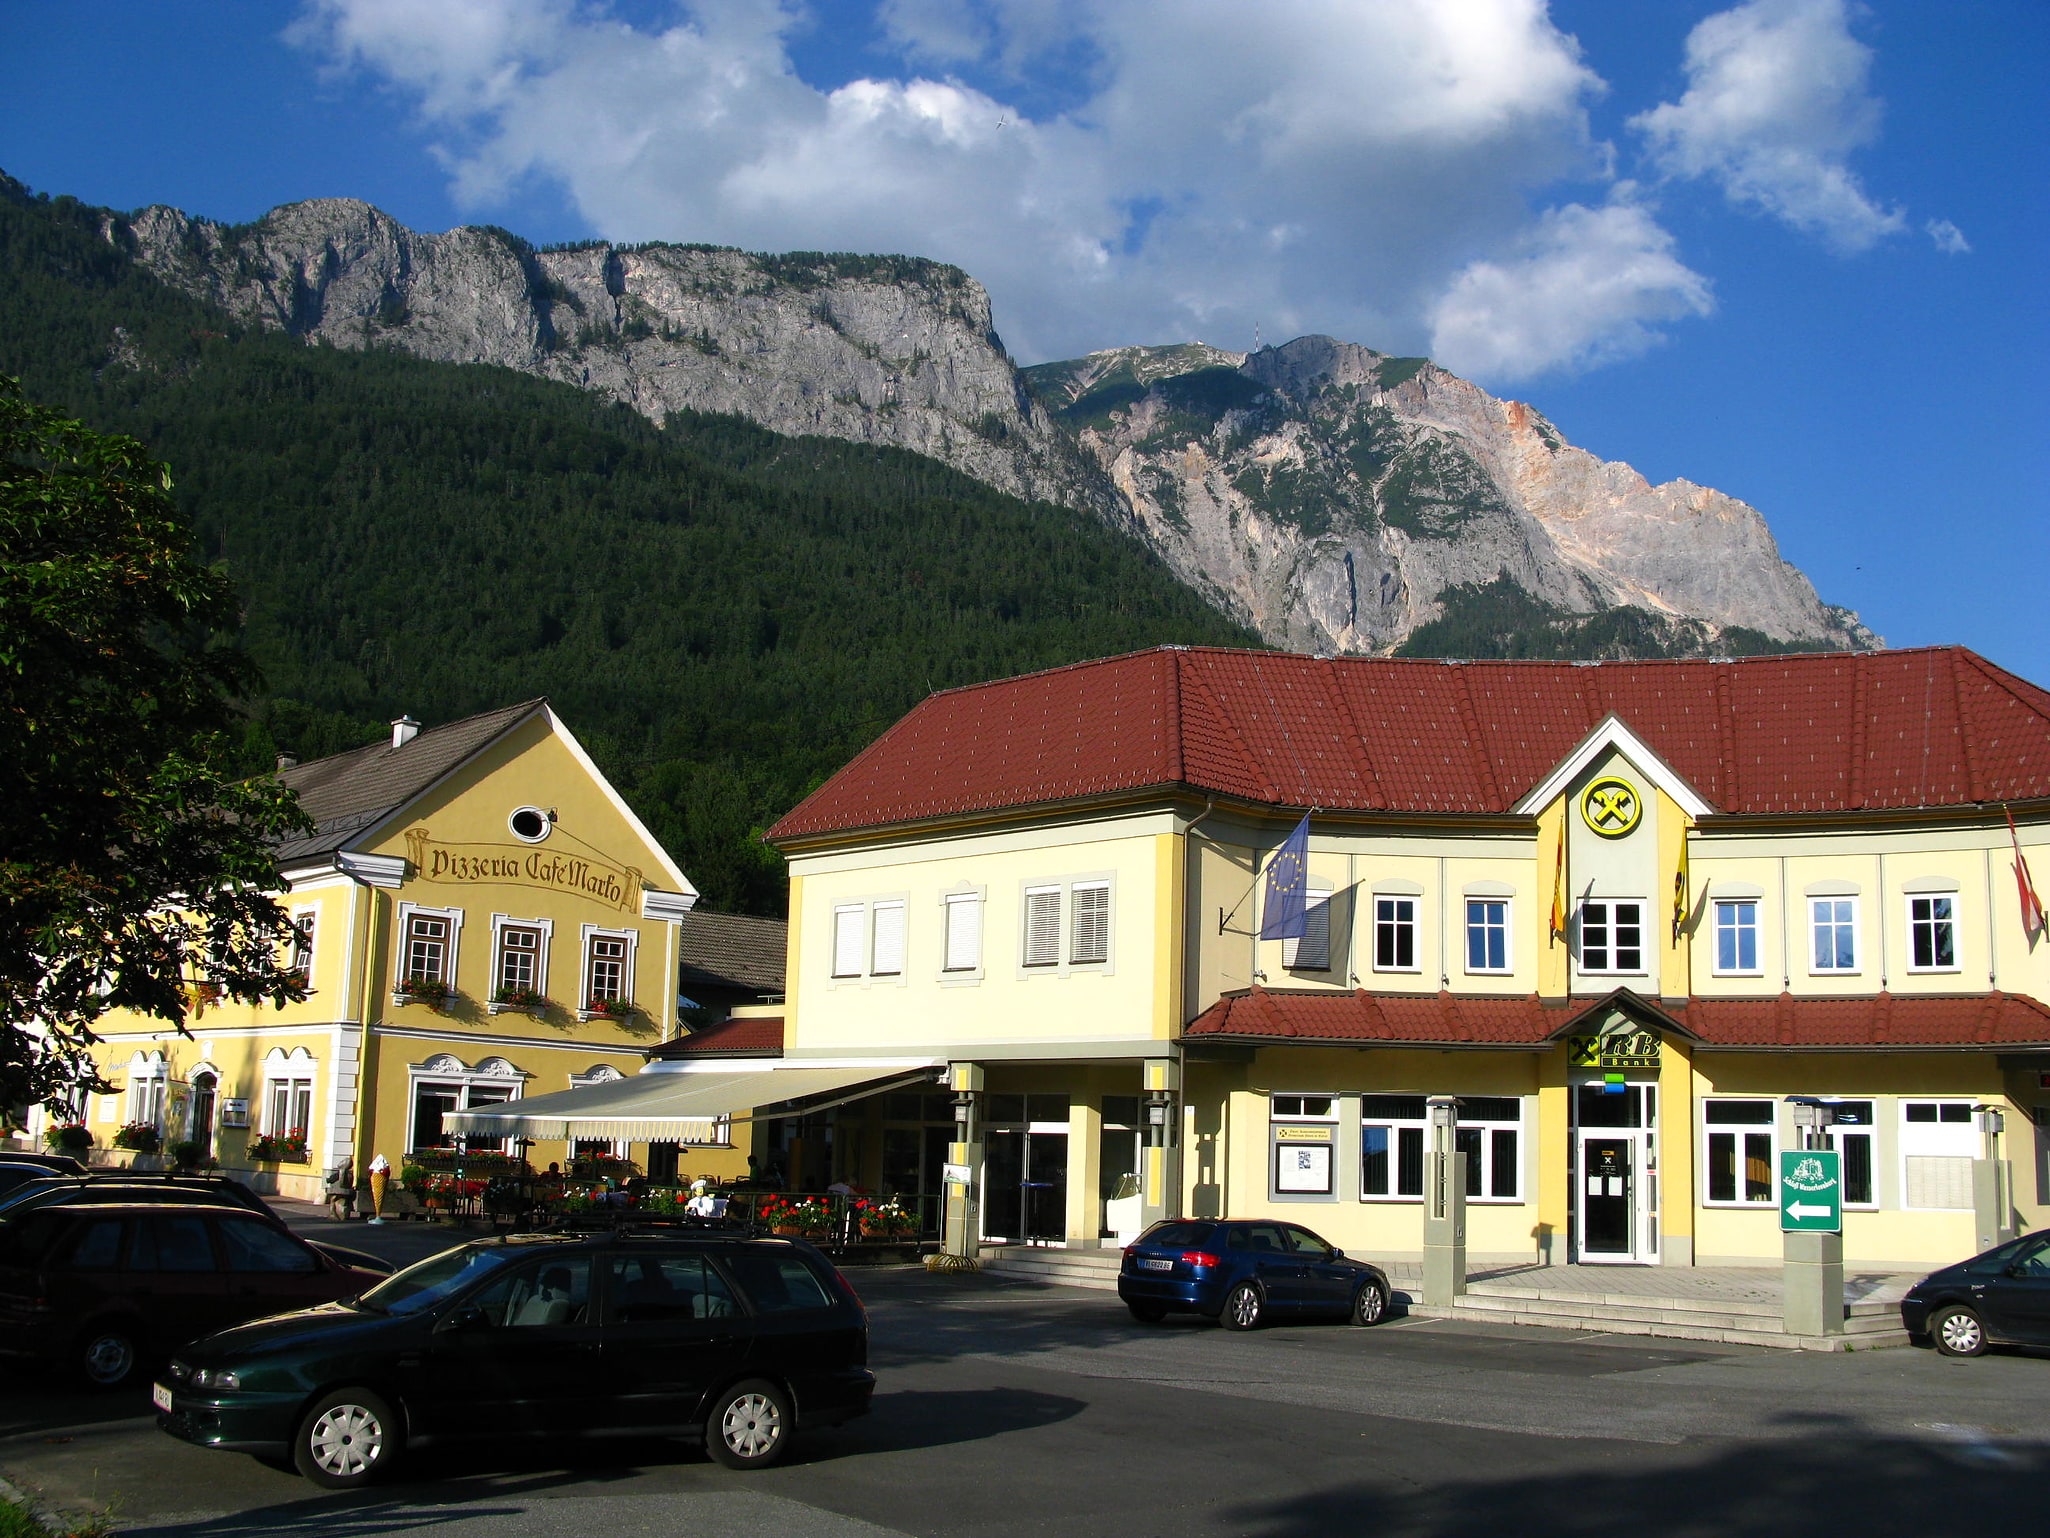 Nötsch im Gailtal, Austria